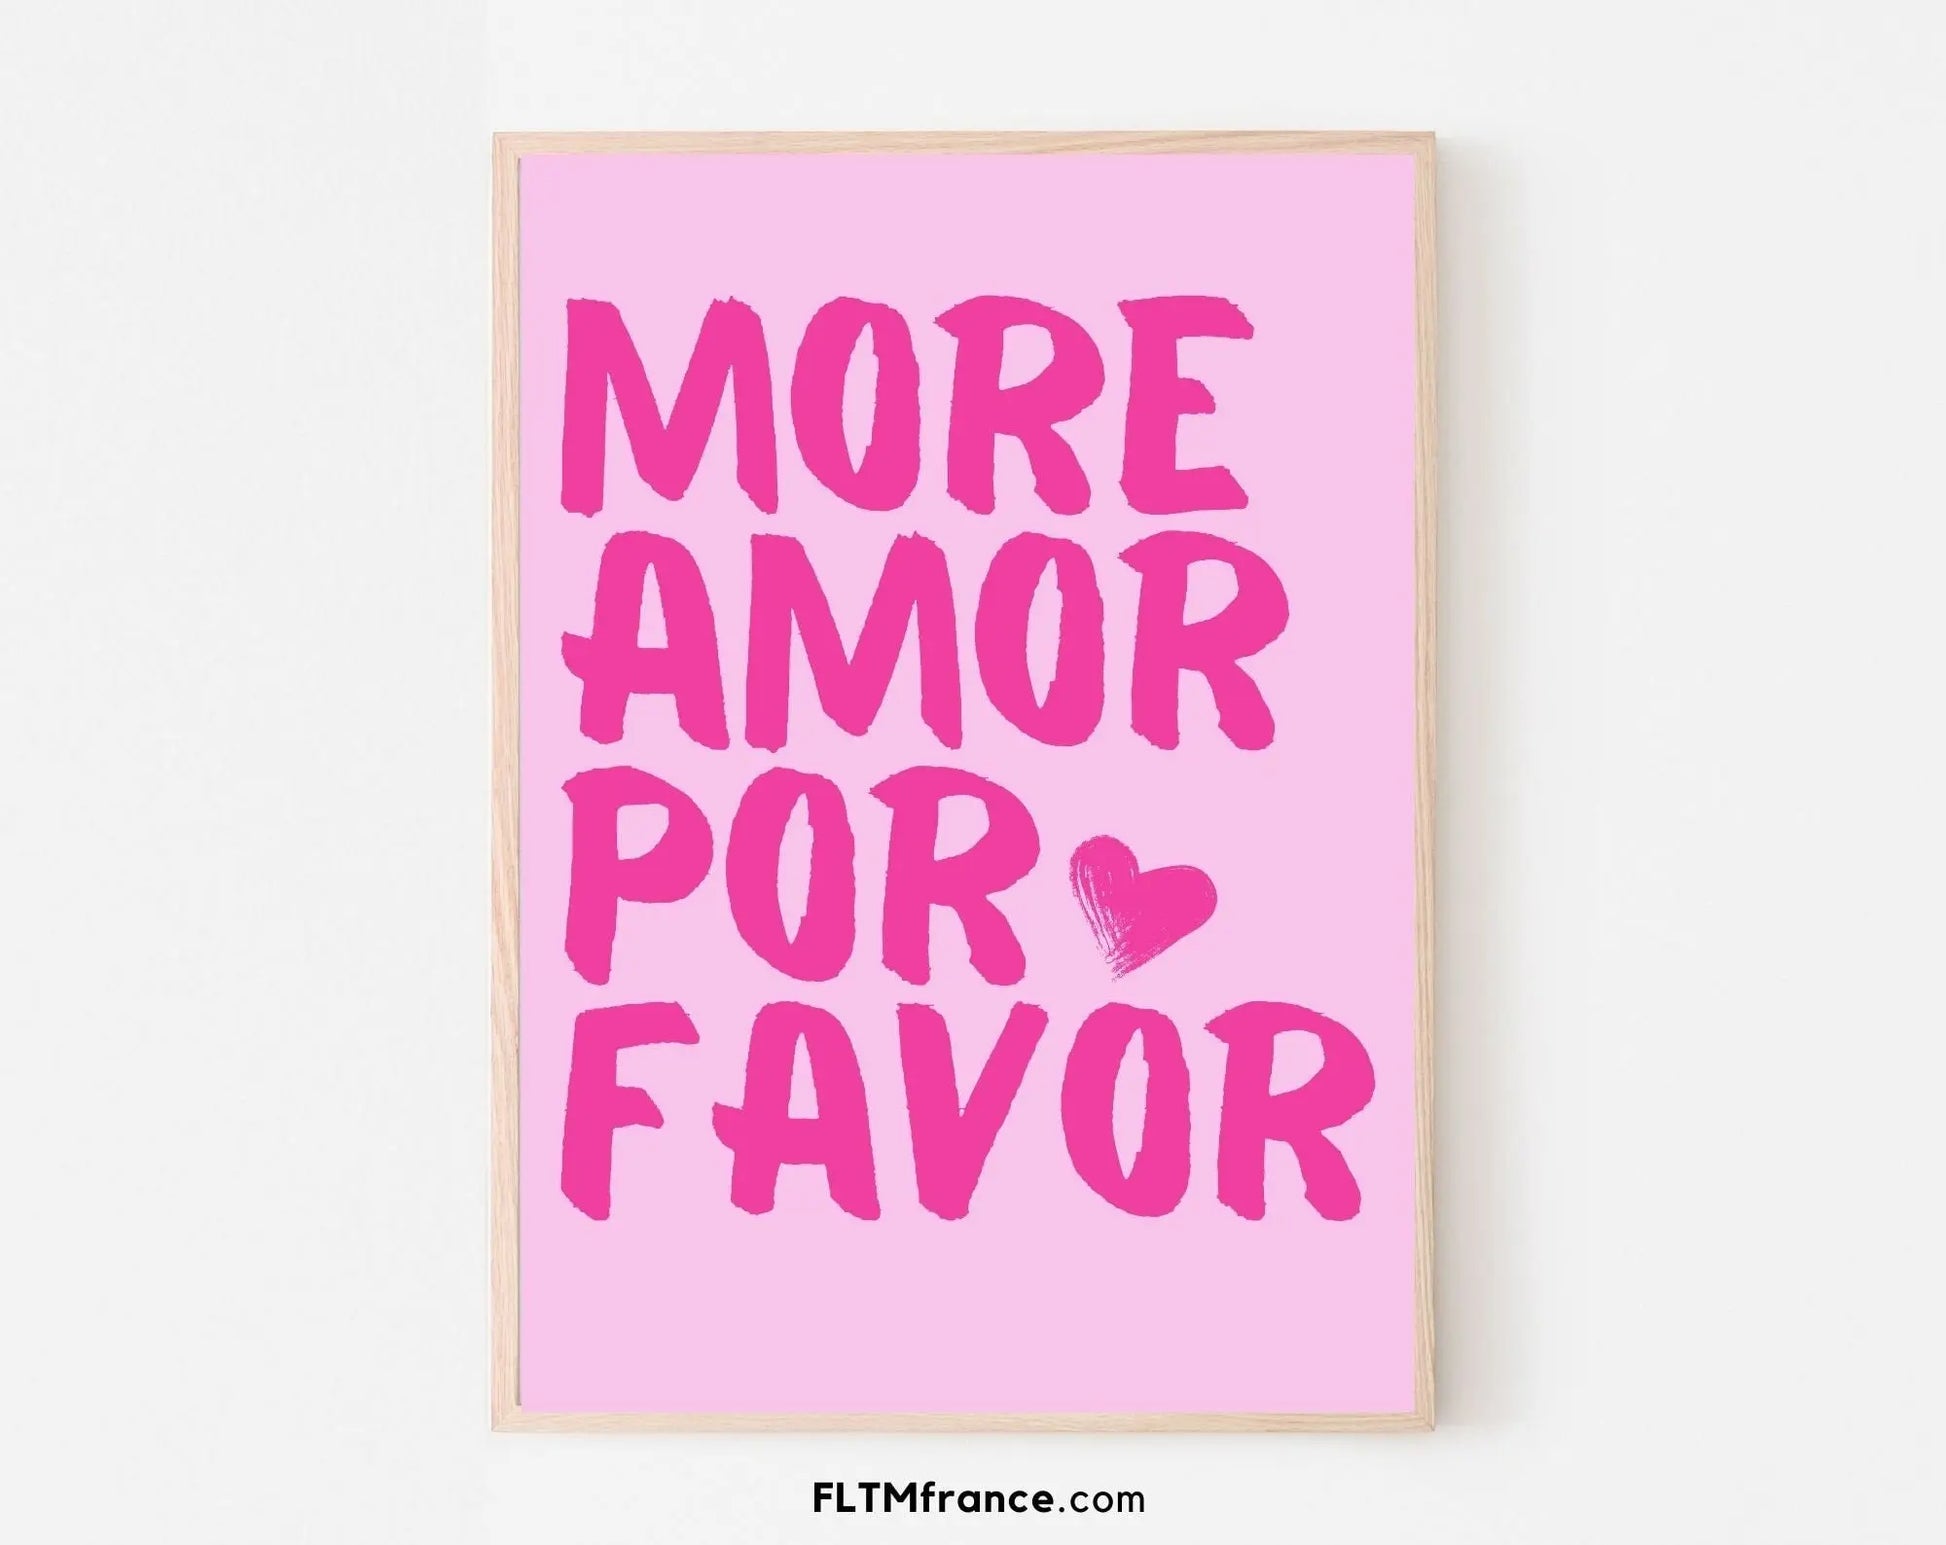 More Amor Por Favor Affiche tons colorés rose - Art mural éclectique moderne - Affiche de citation d'amour - Poster à imprimer FLTMfrance FLTMfrance